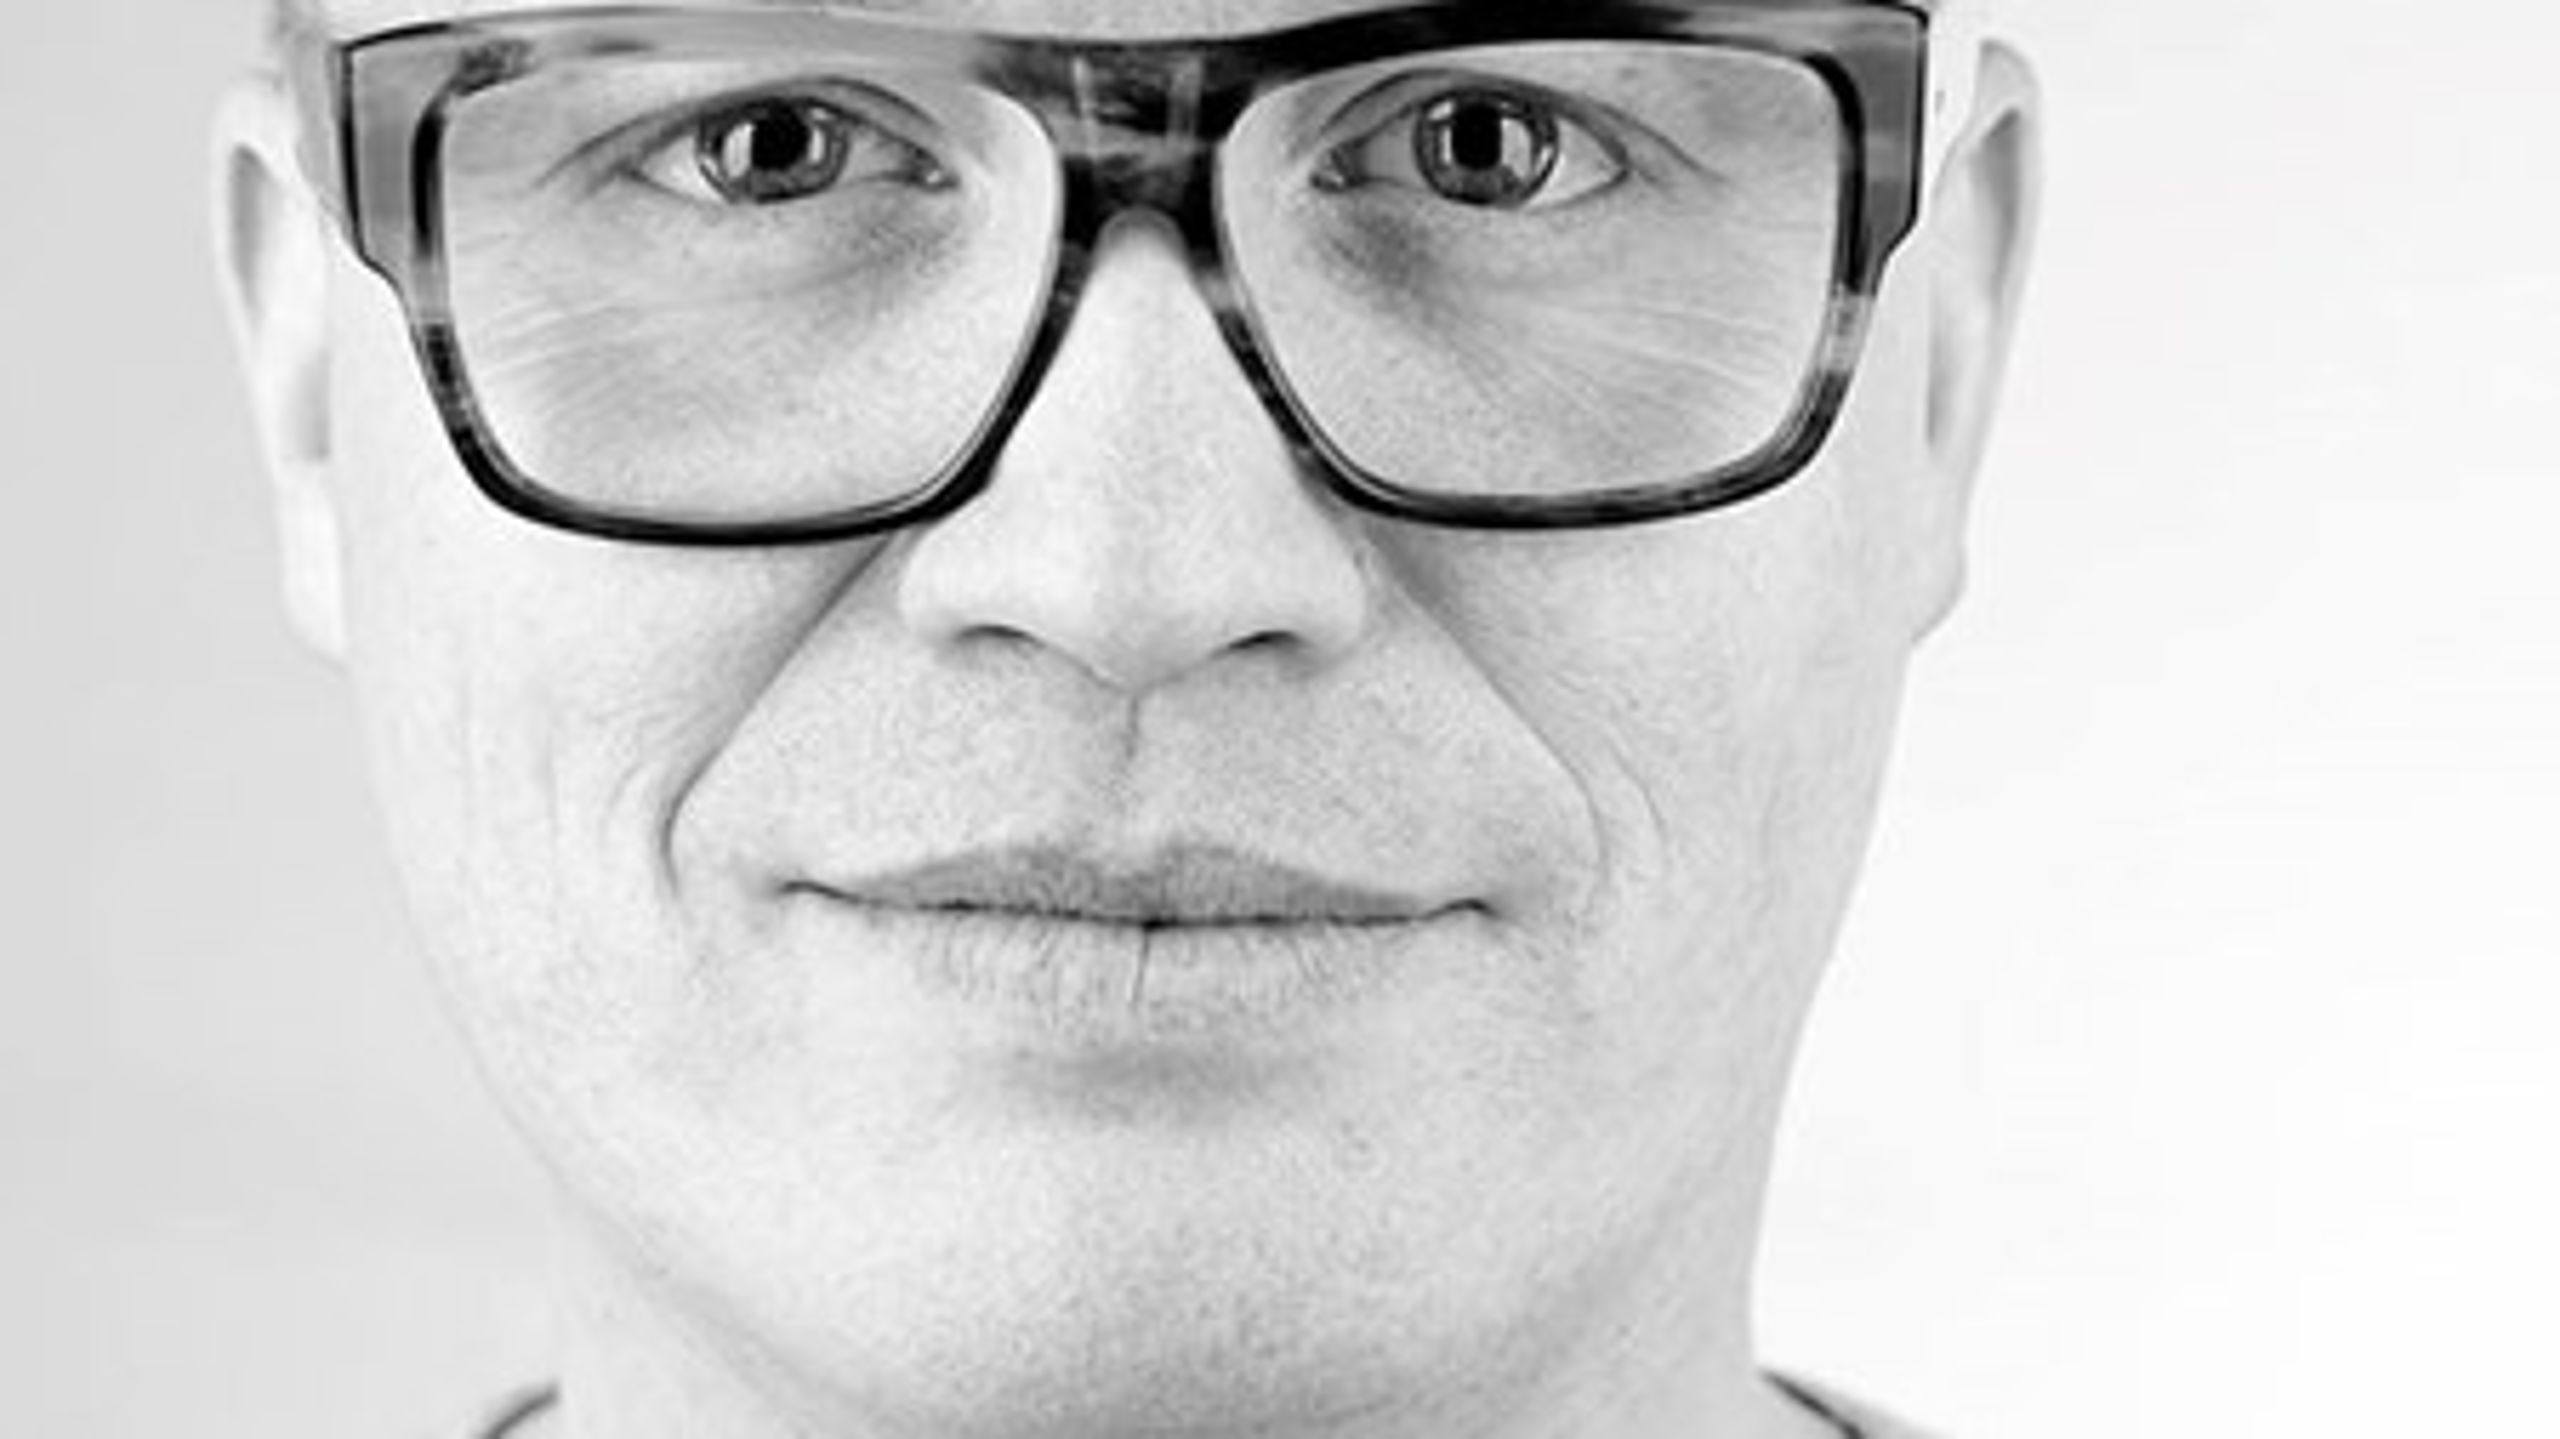 Rasmus Nordqvist, Alternativets ordfører for kultur og kunst, vil lade sundhedssektoren og kulturlivet samarbejde om et nyt eksperiment med at tilbyde kultur på recept til syge og deprimerede danskere.